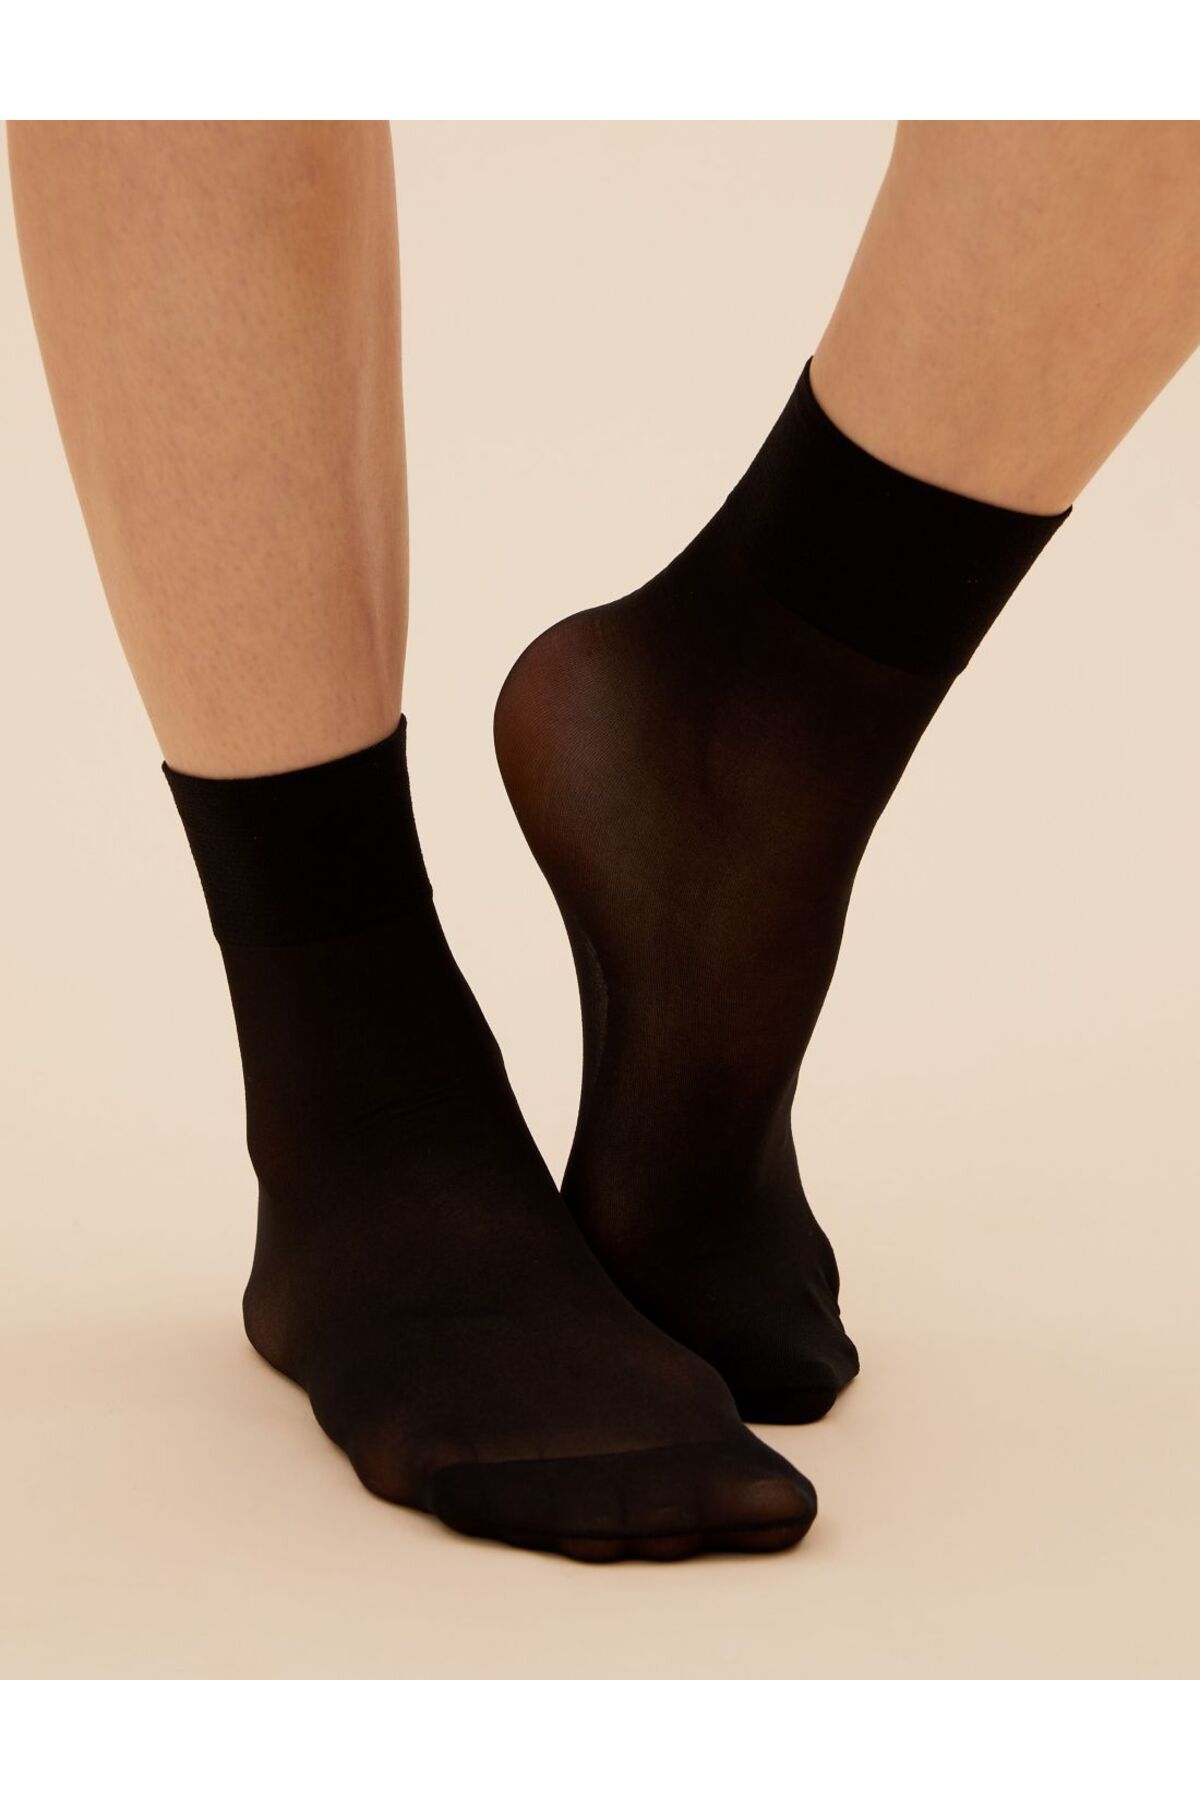 Marks & Spencer 4'lü 10 Denye Pantolon Çorabı Seti